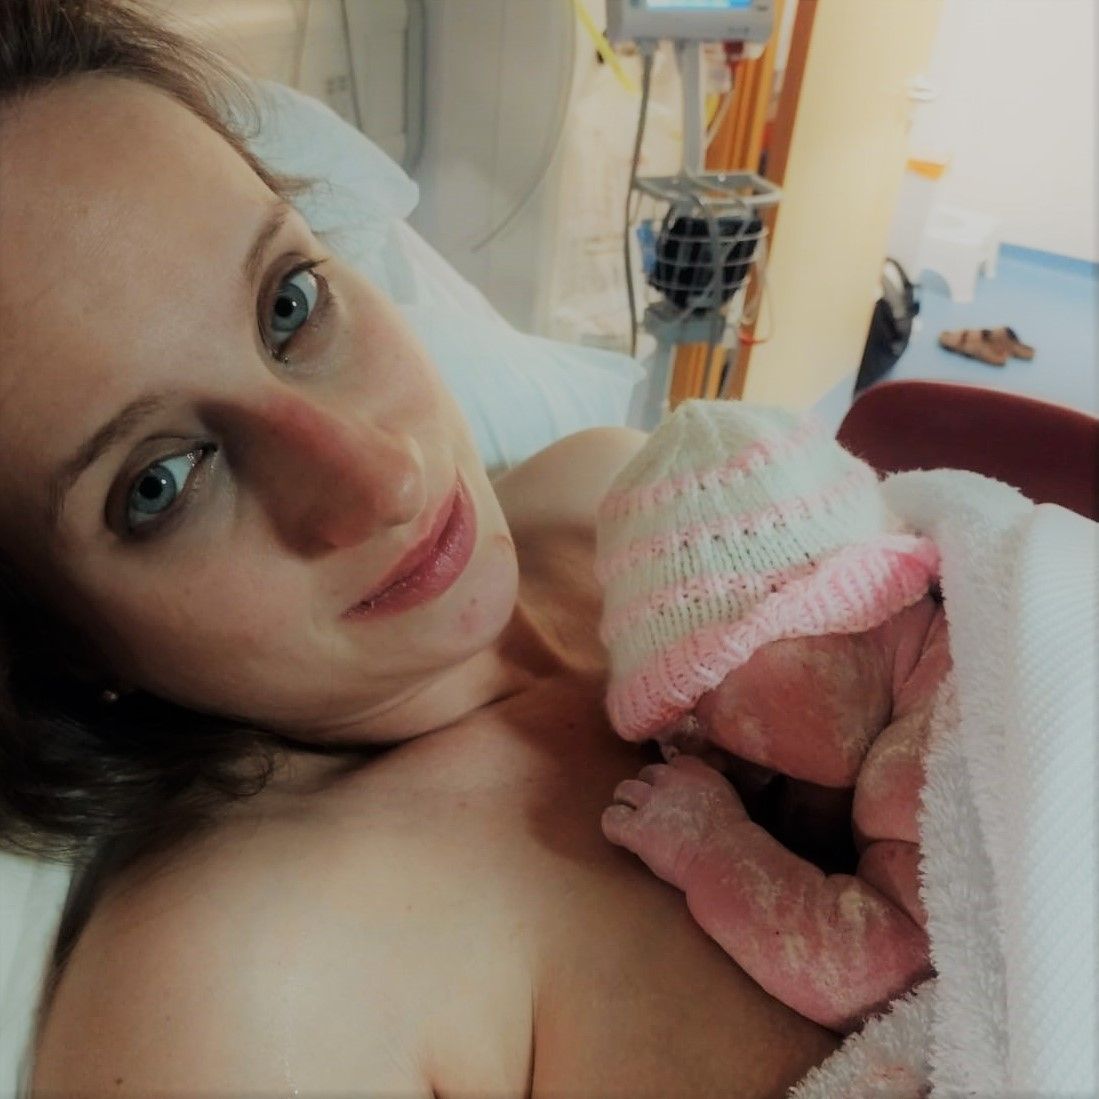 New mum and newborn hypnobirthing first time mum